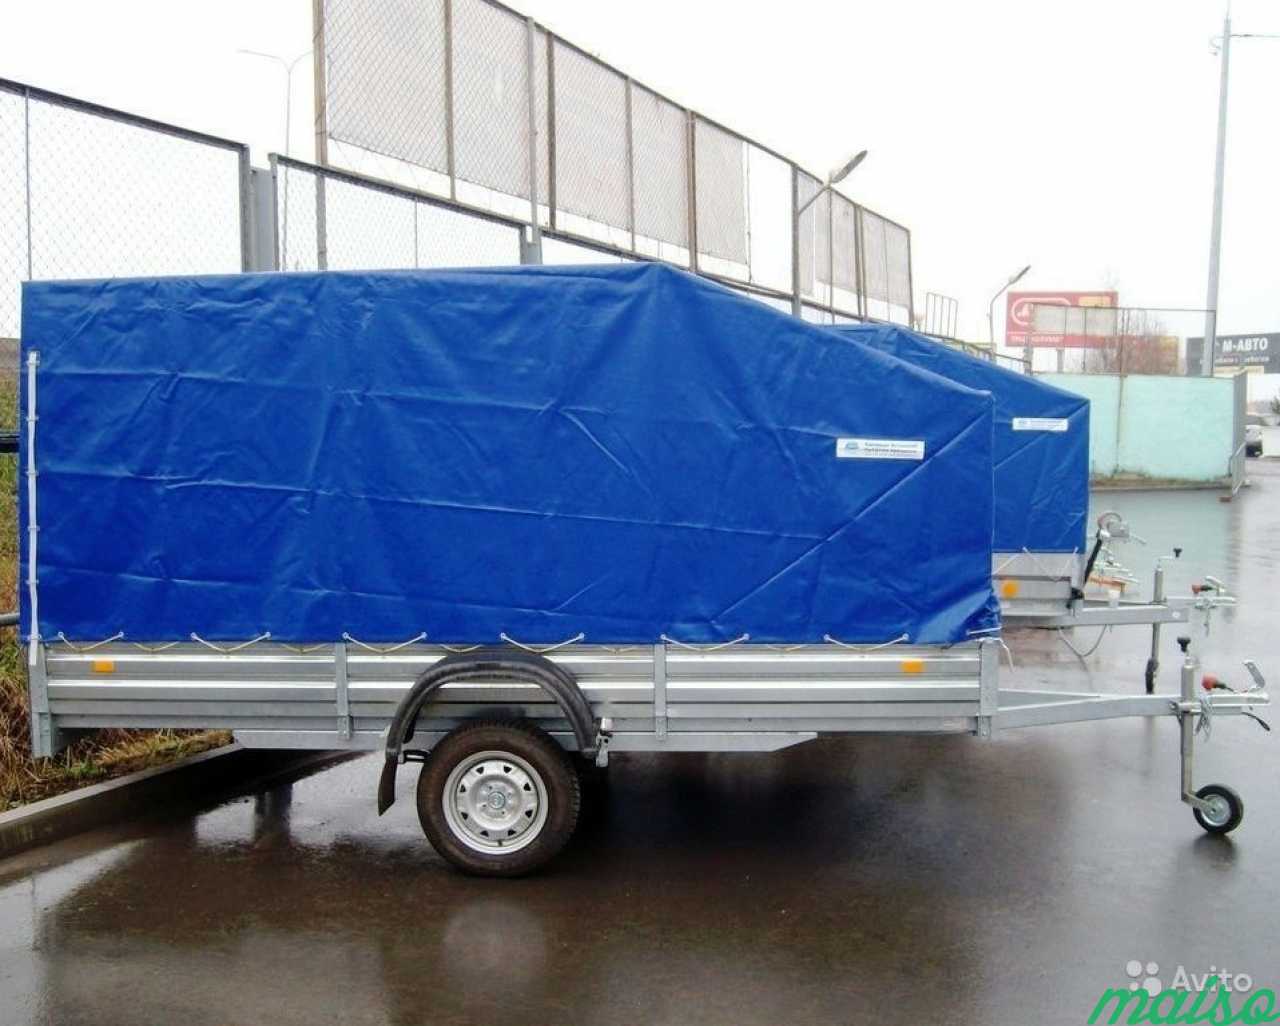 Прицеп (на рессорах), кузов 3.5х1.5 метра в Санкт-Петербурге. Фото 1